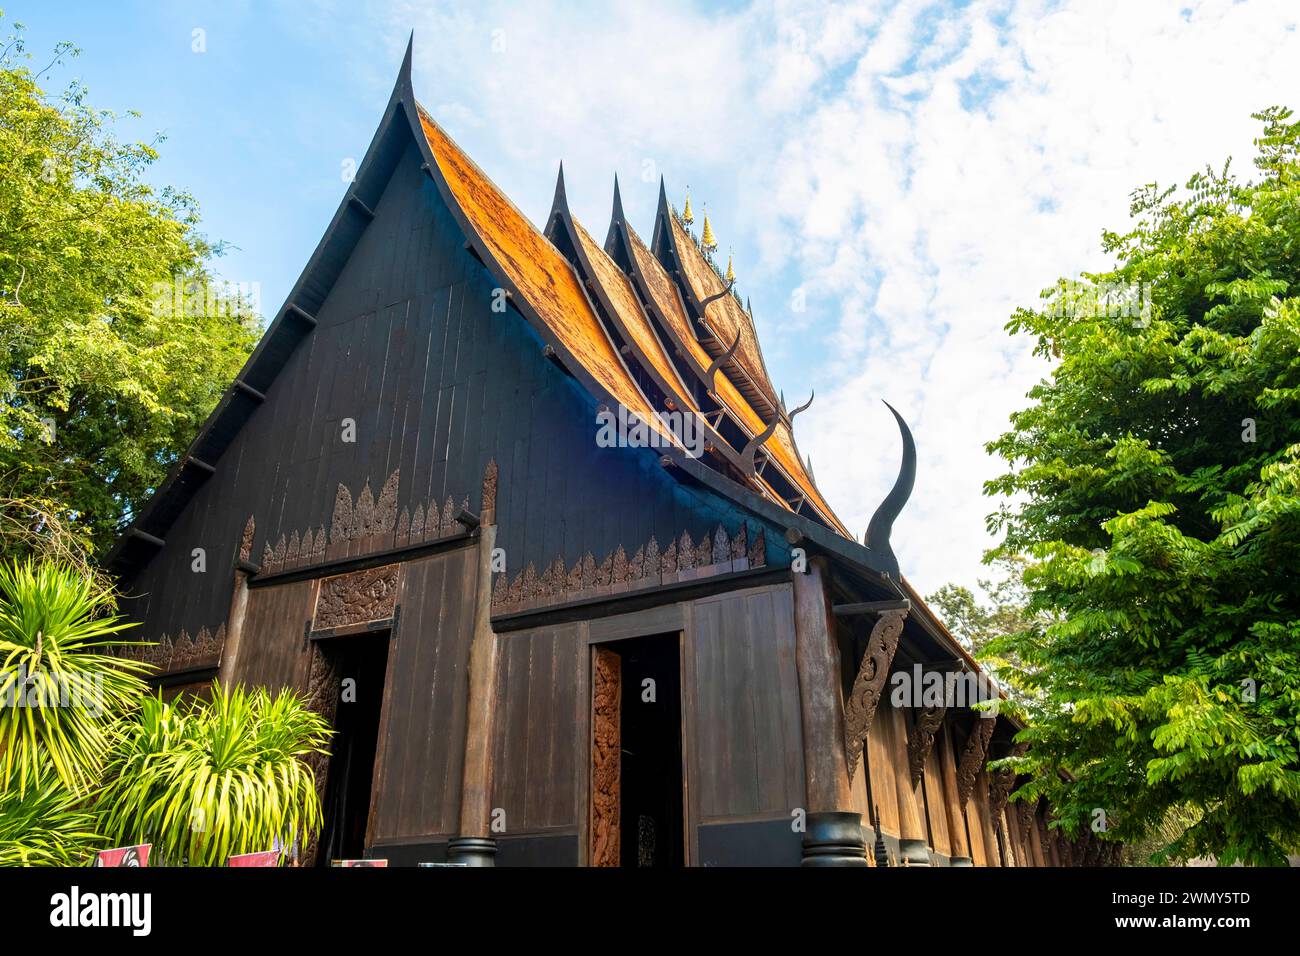 Thailand, Chiang Rai, Baan Dam museum or black temple, by the artist Thawan Duchanee Stock Photo